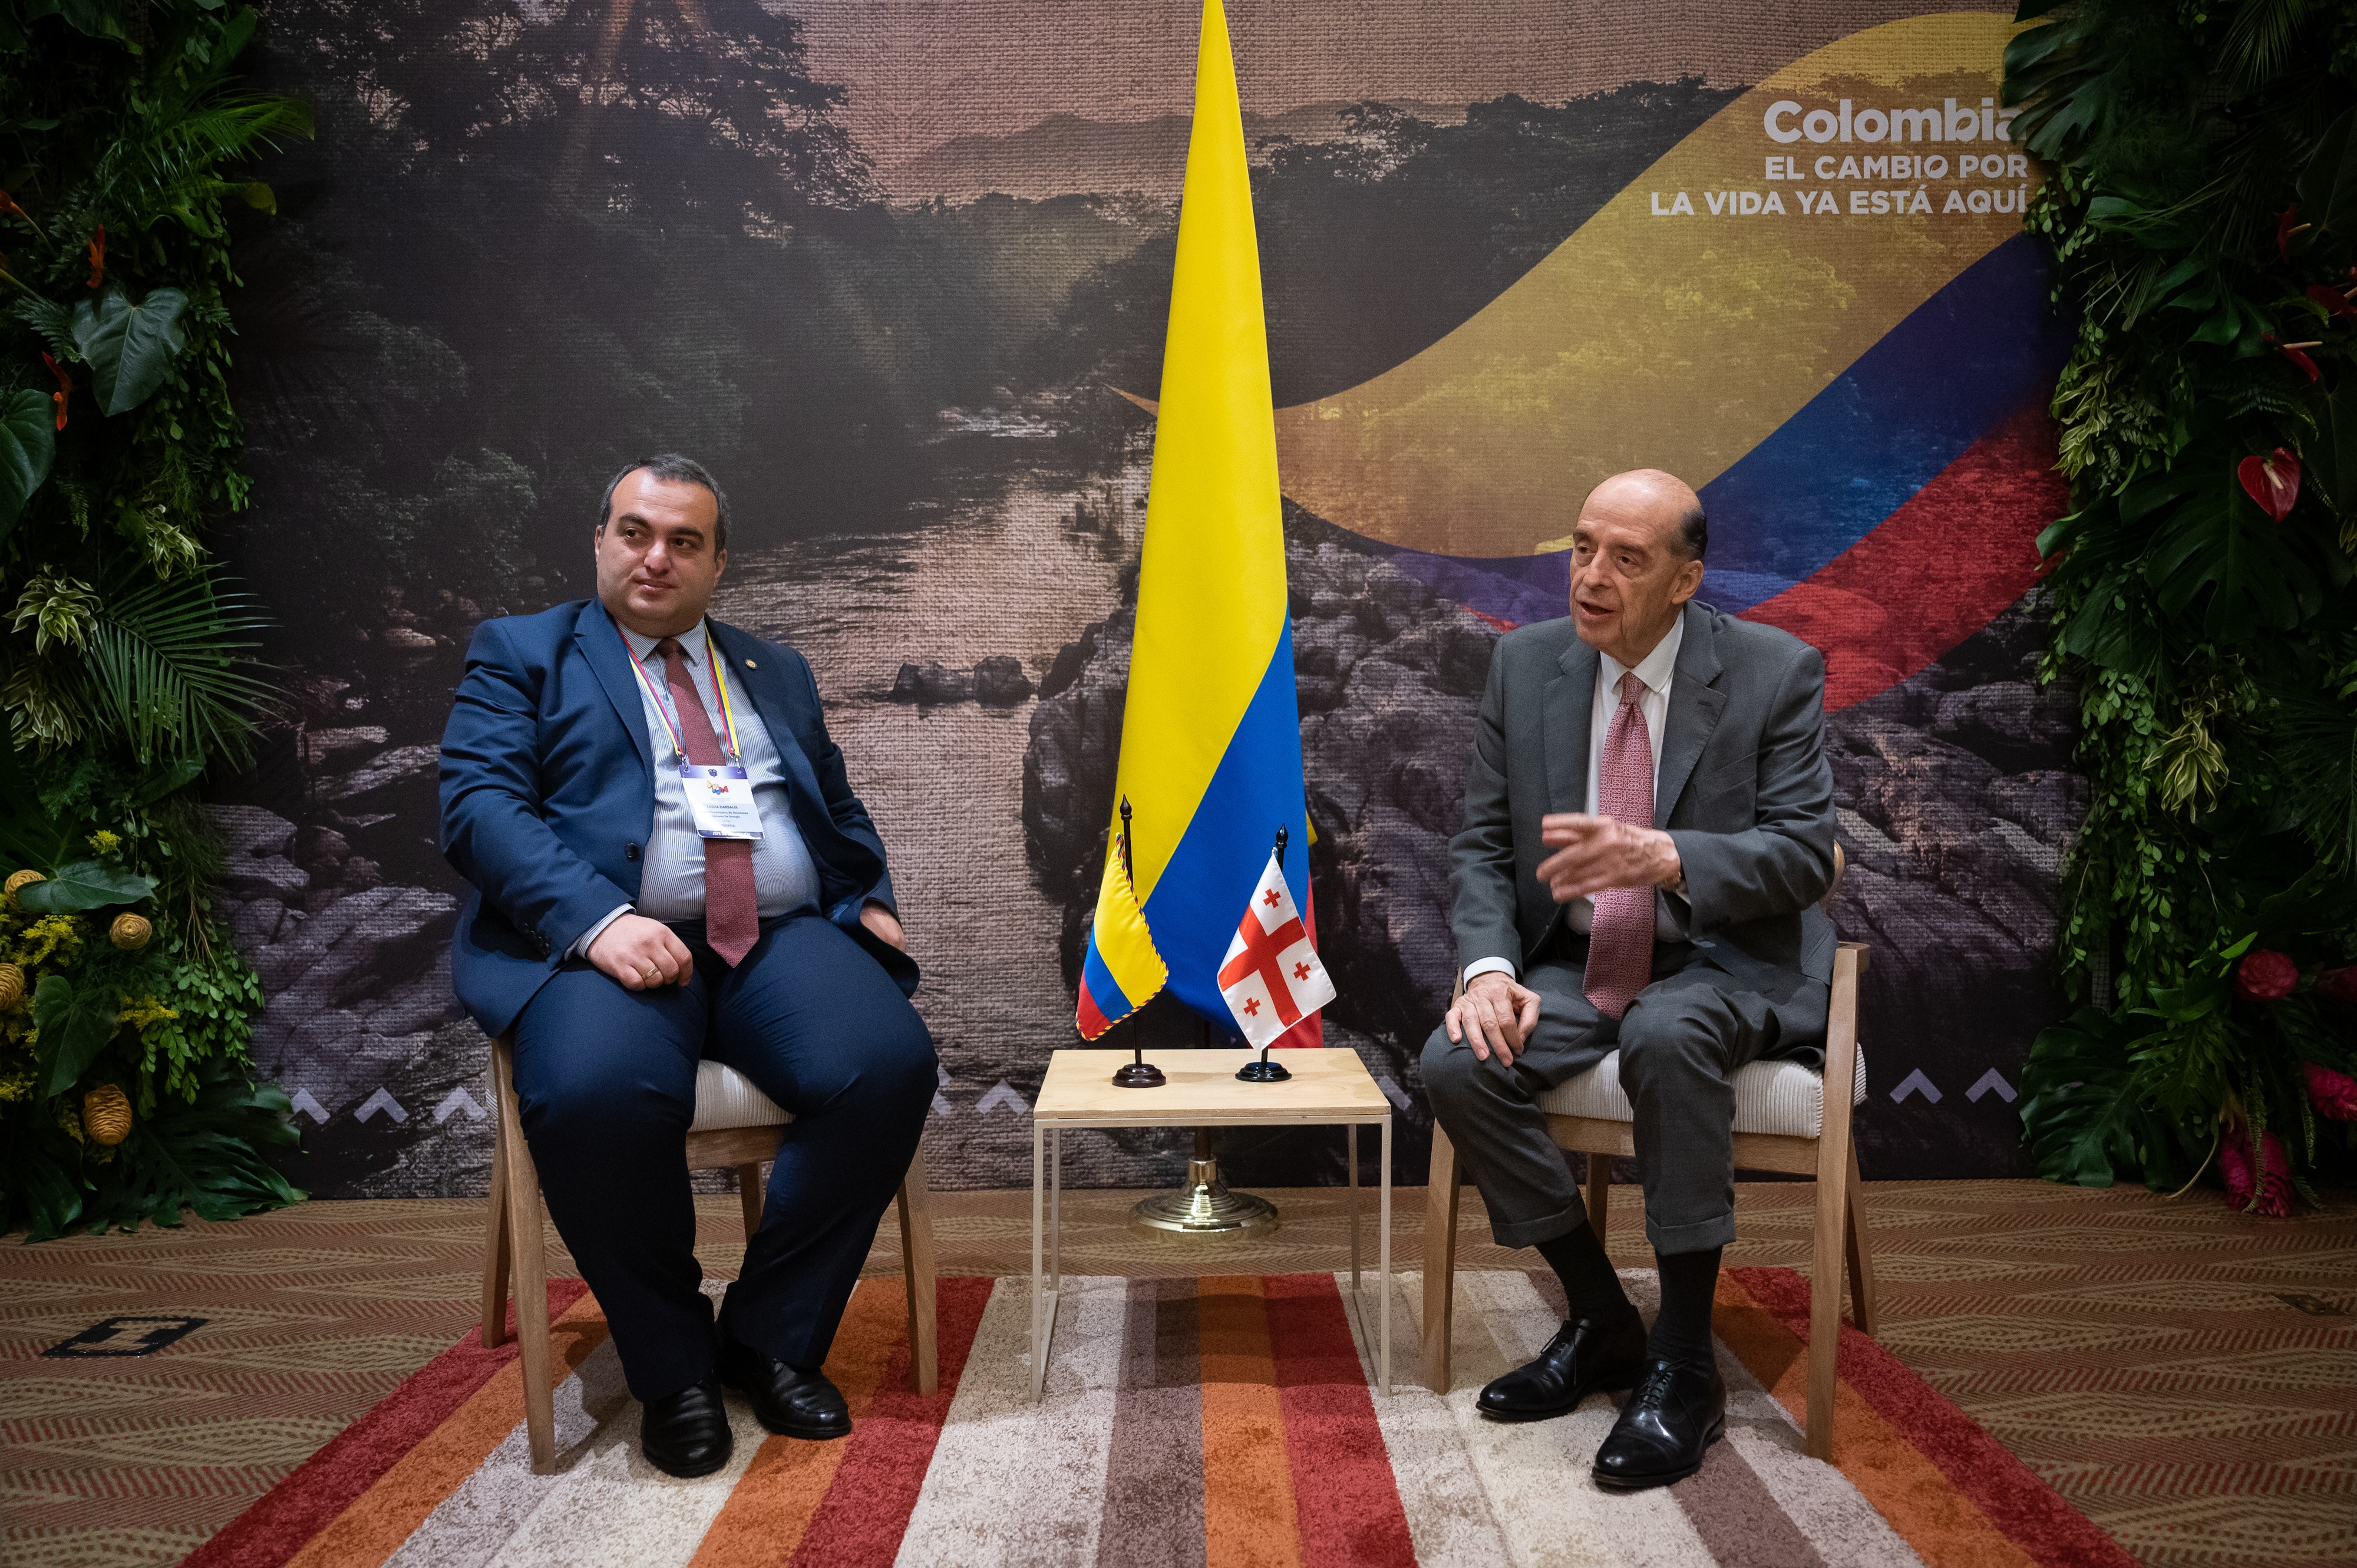 Fortalecimiento de la agenda bilateral tema central en el encuentro entre Canciller de Colombia y el Viceministro de Relaciones Exteriores de Georgia